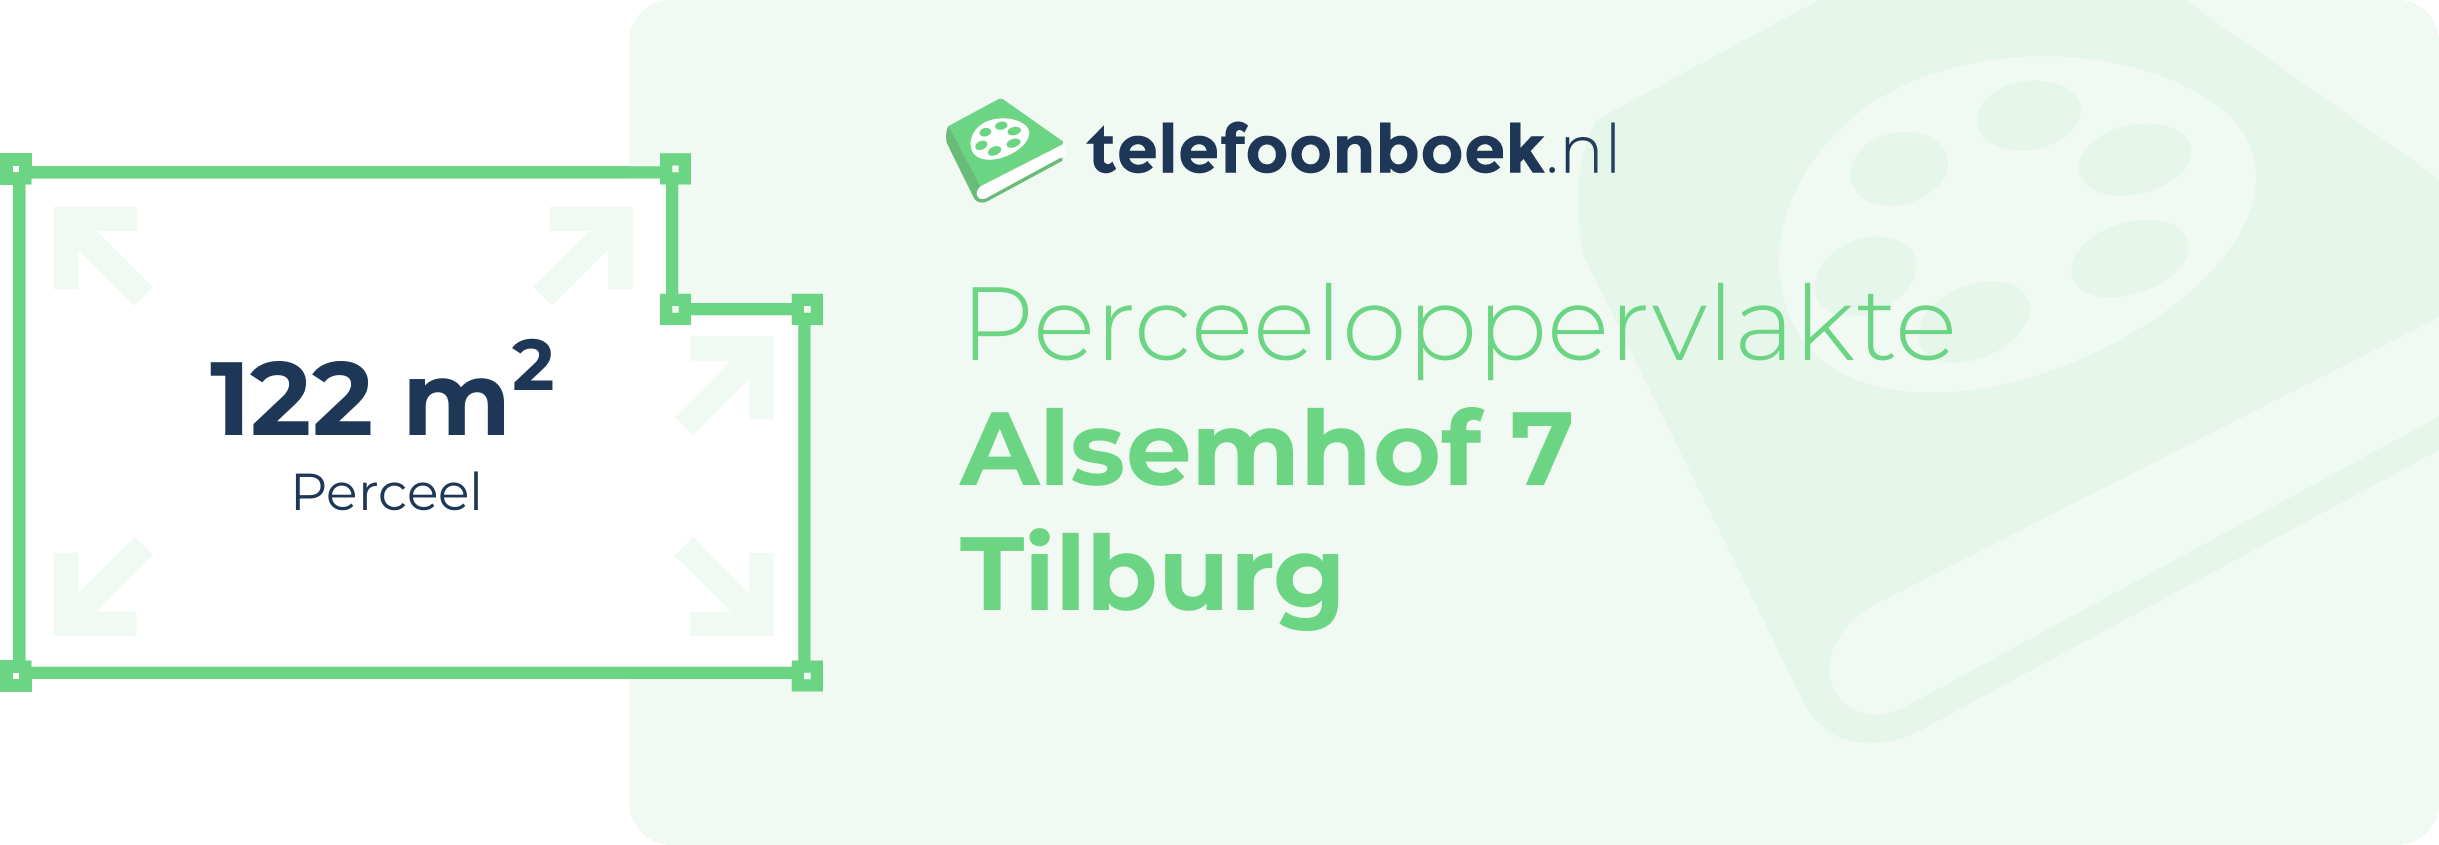 Perceeloppervlakte Alsemhof 7 Tilburg